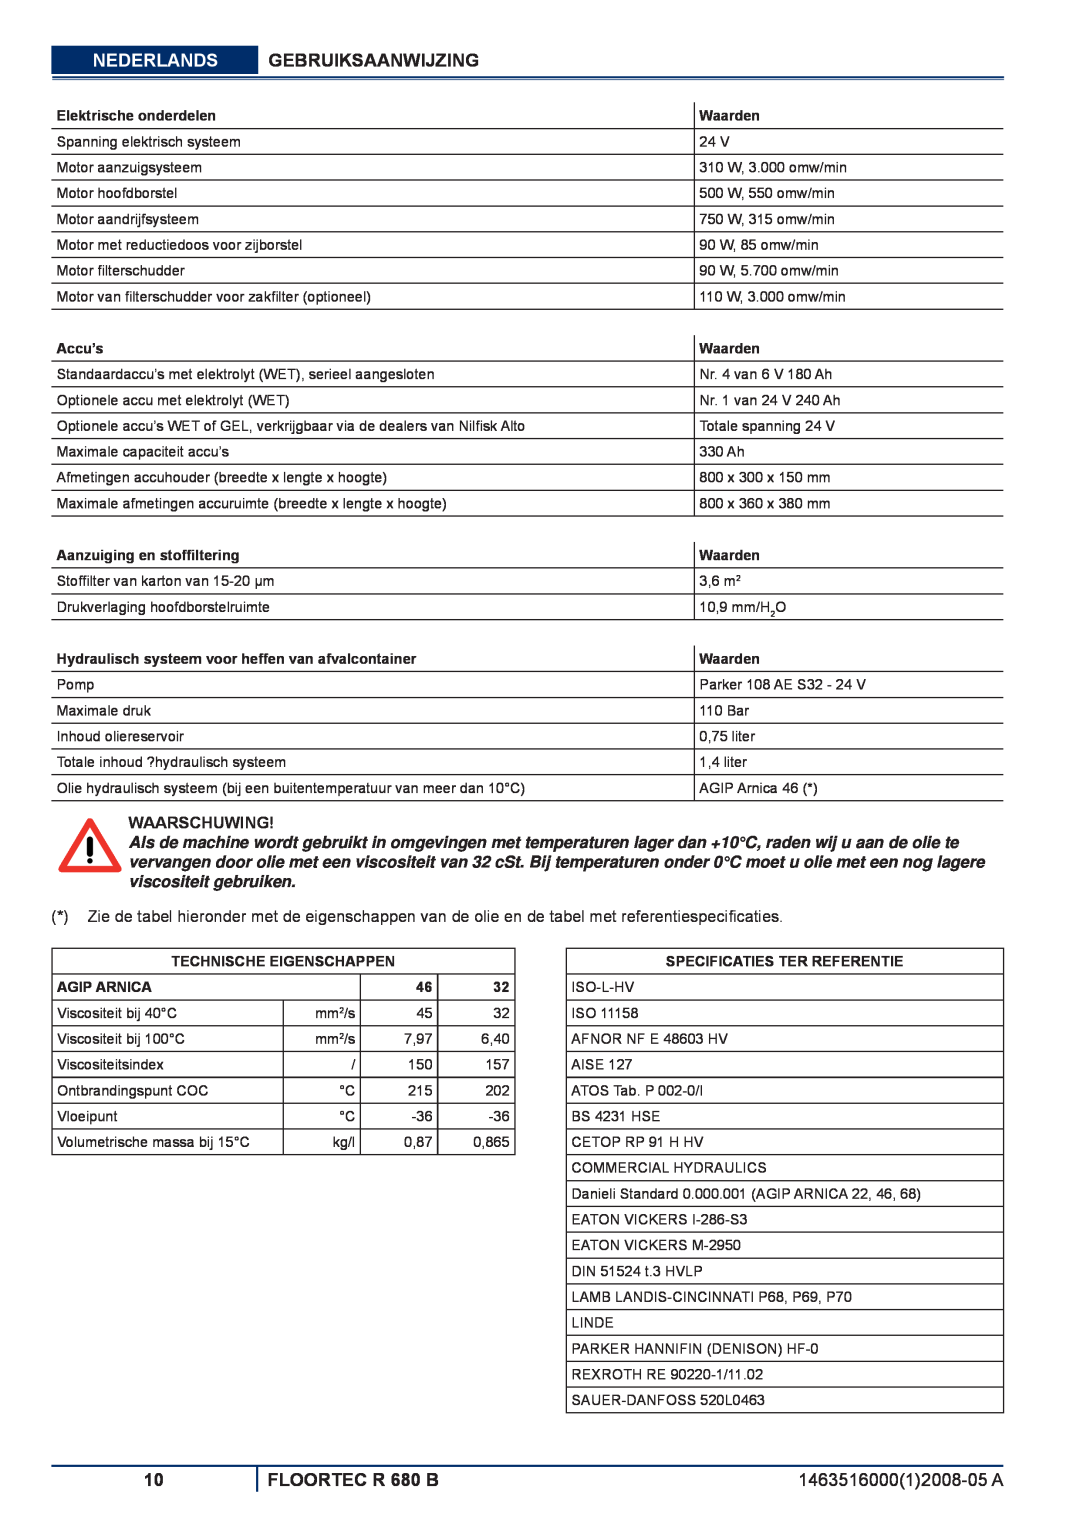 Nilfisk-ALTO manuel dutilisation Nederlands, Gebruiksaanwijzing, FLOORTEC R 680 B, Waarschuwing, Elektrische onderdelen 